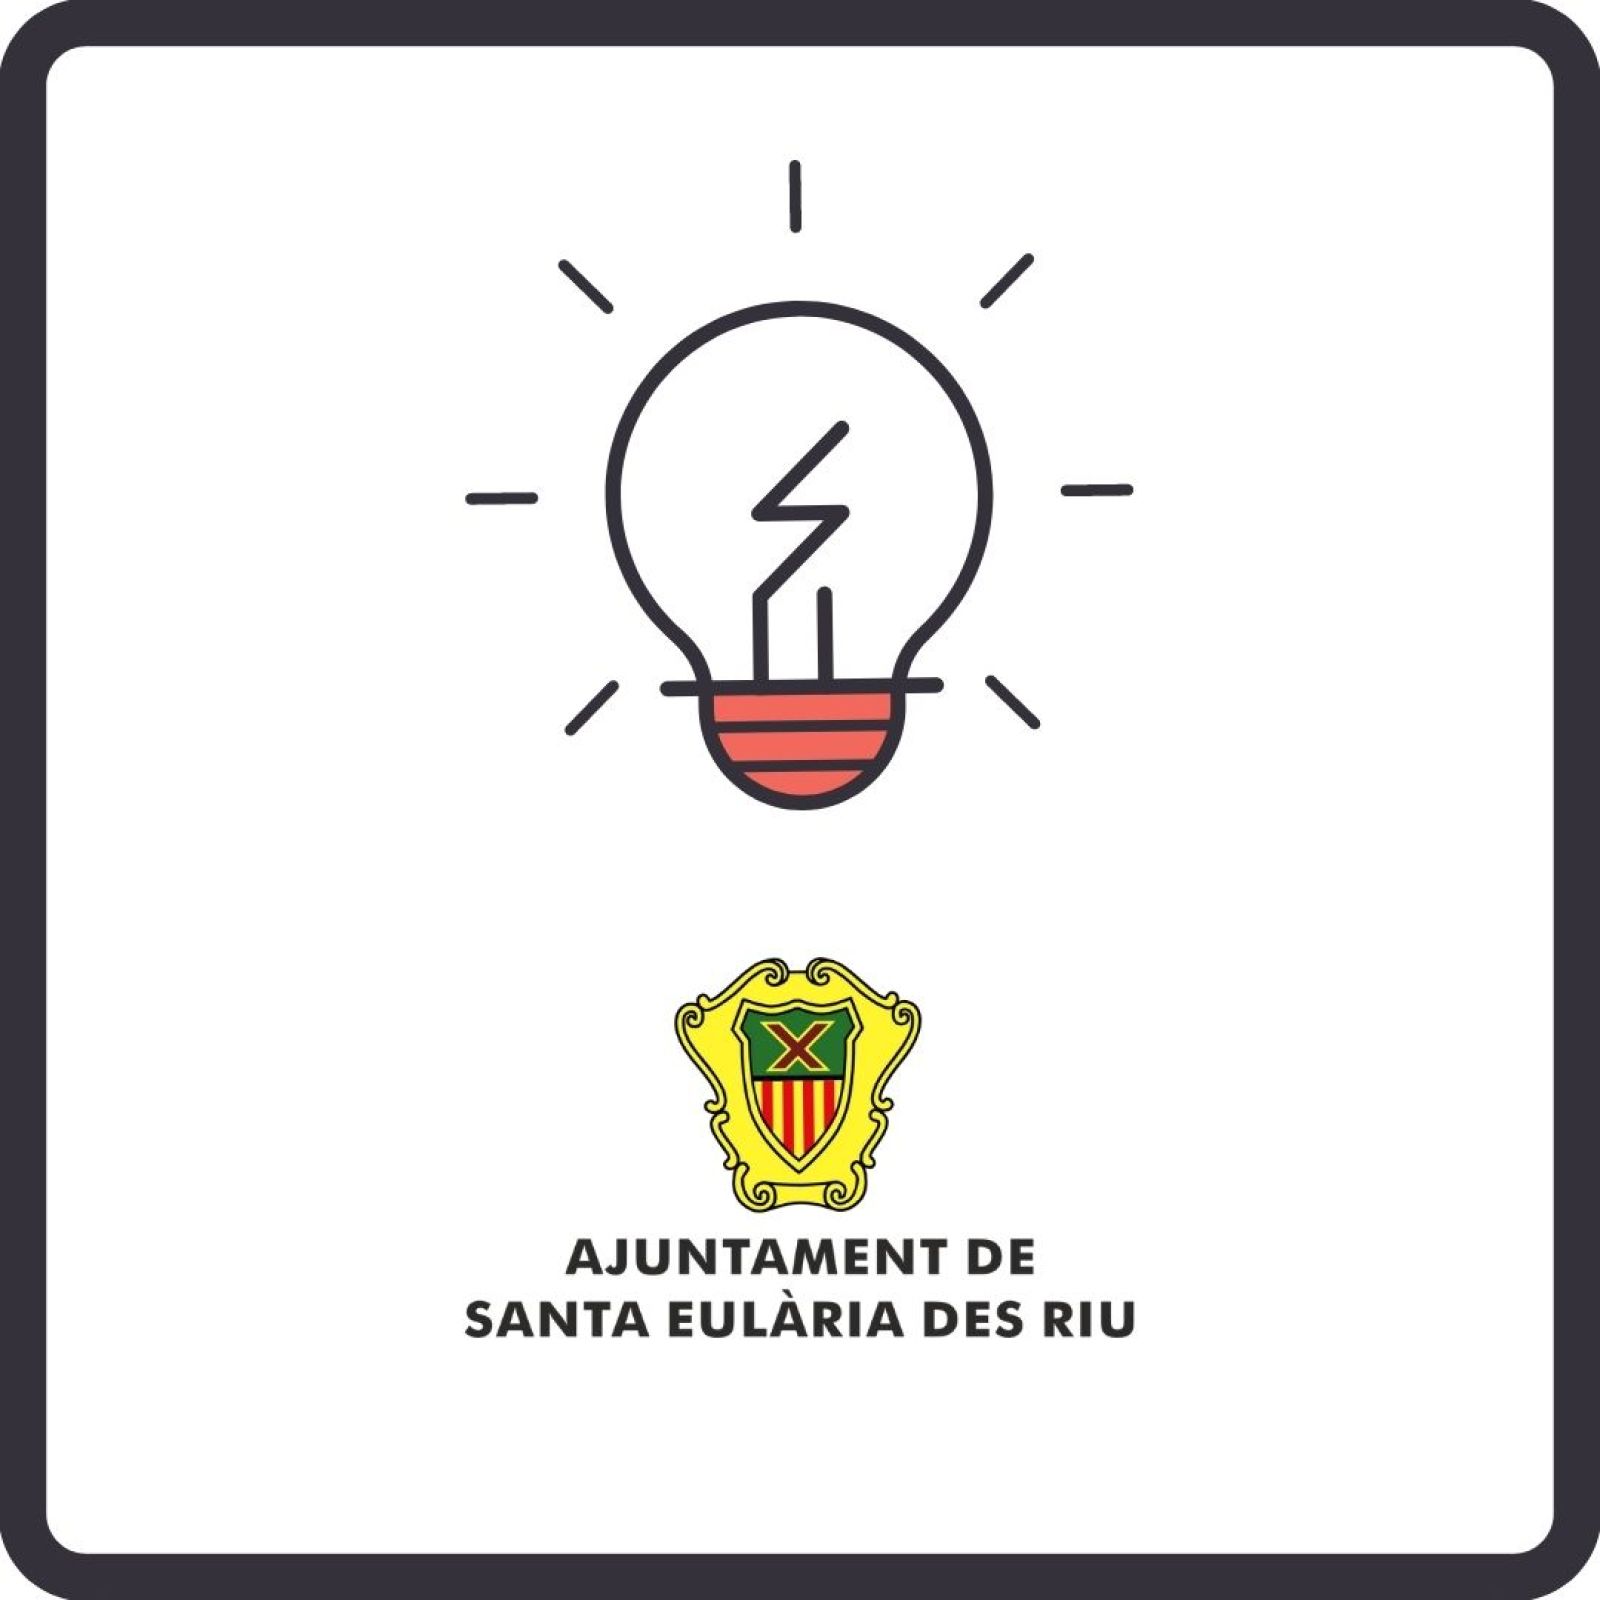 Corte temporal del suministro de energía eléctrica en diferentes zonas de Santa Eulària des Riu los días 19,20,21 de octubre